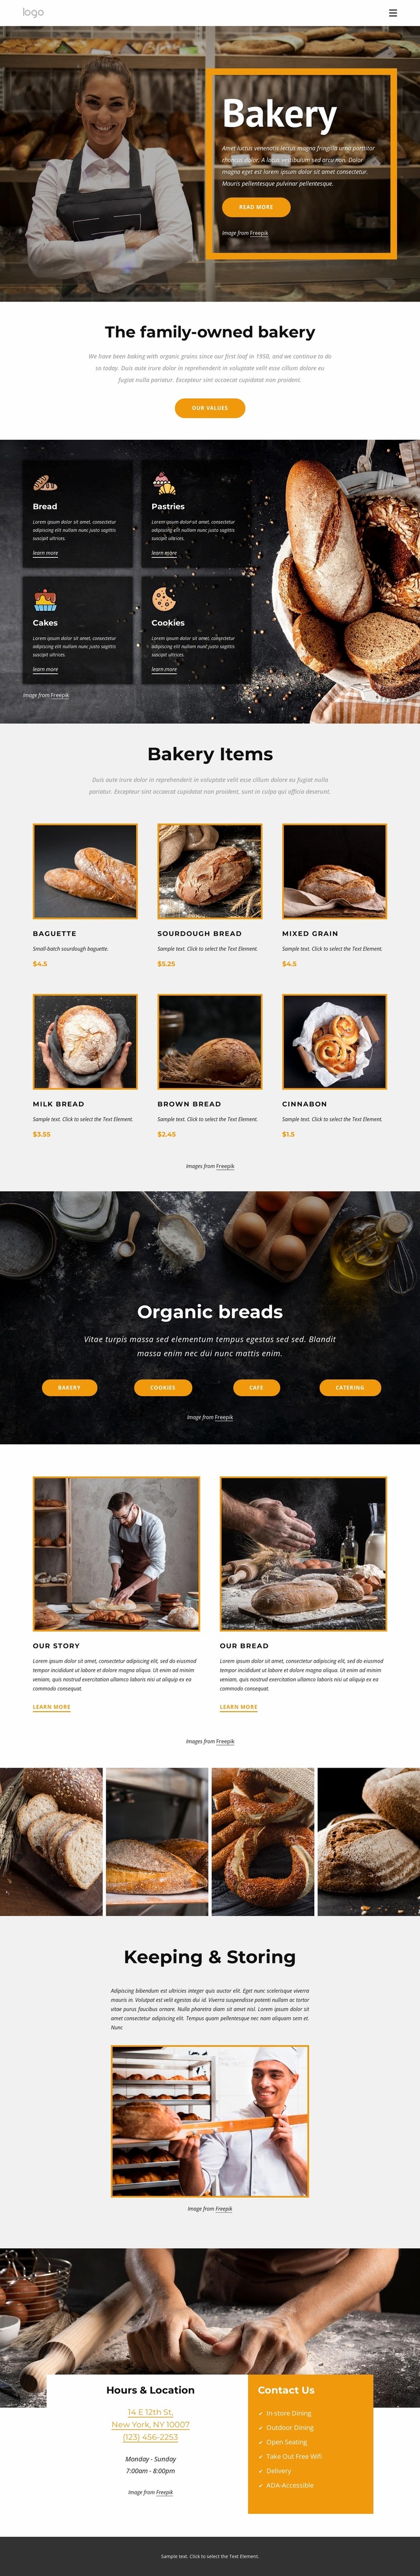 The family-owned bakery Website Design